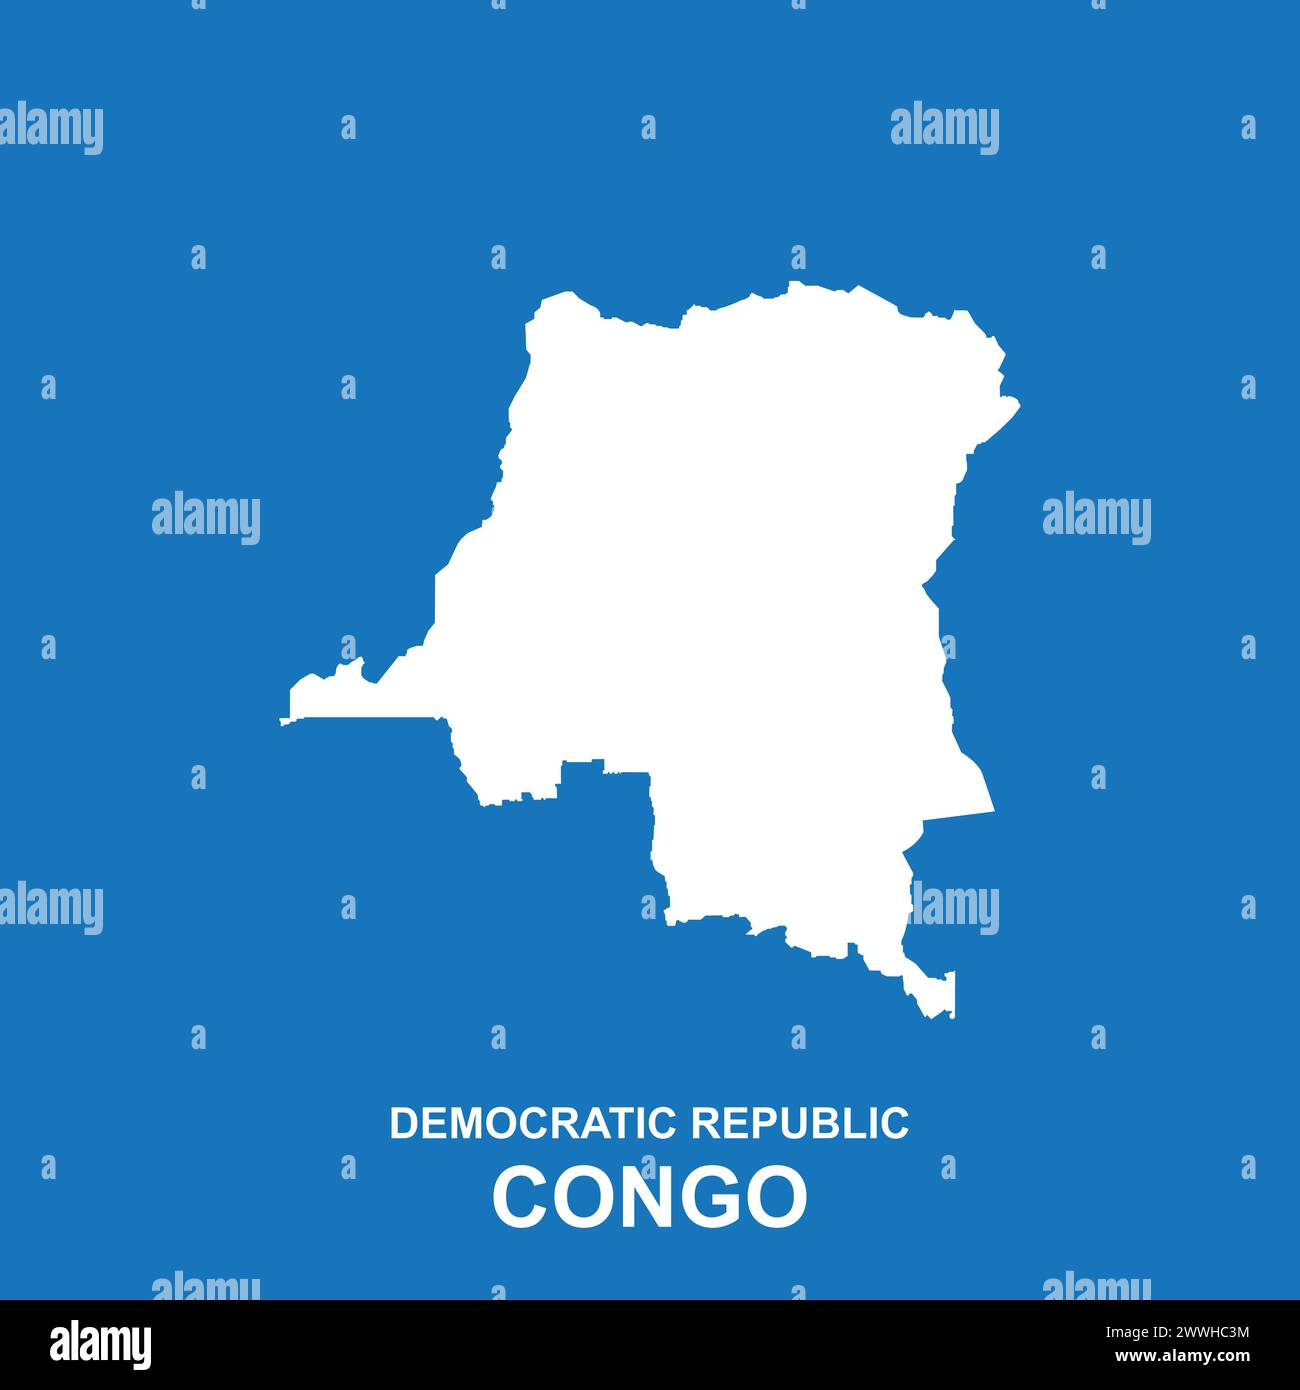 Conception d'illustration vectorielle d'icône de carte de la République démocratique du Congo Illustration de Vecteur